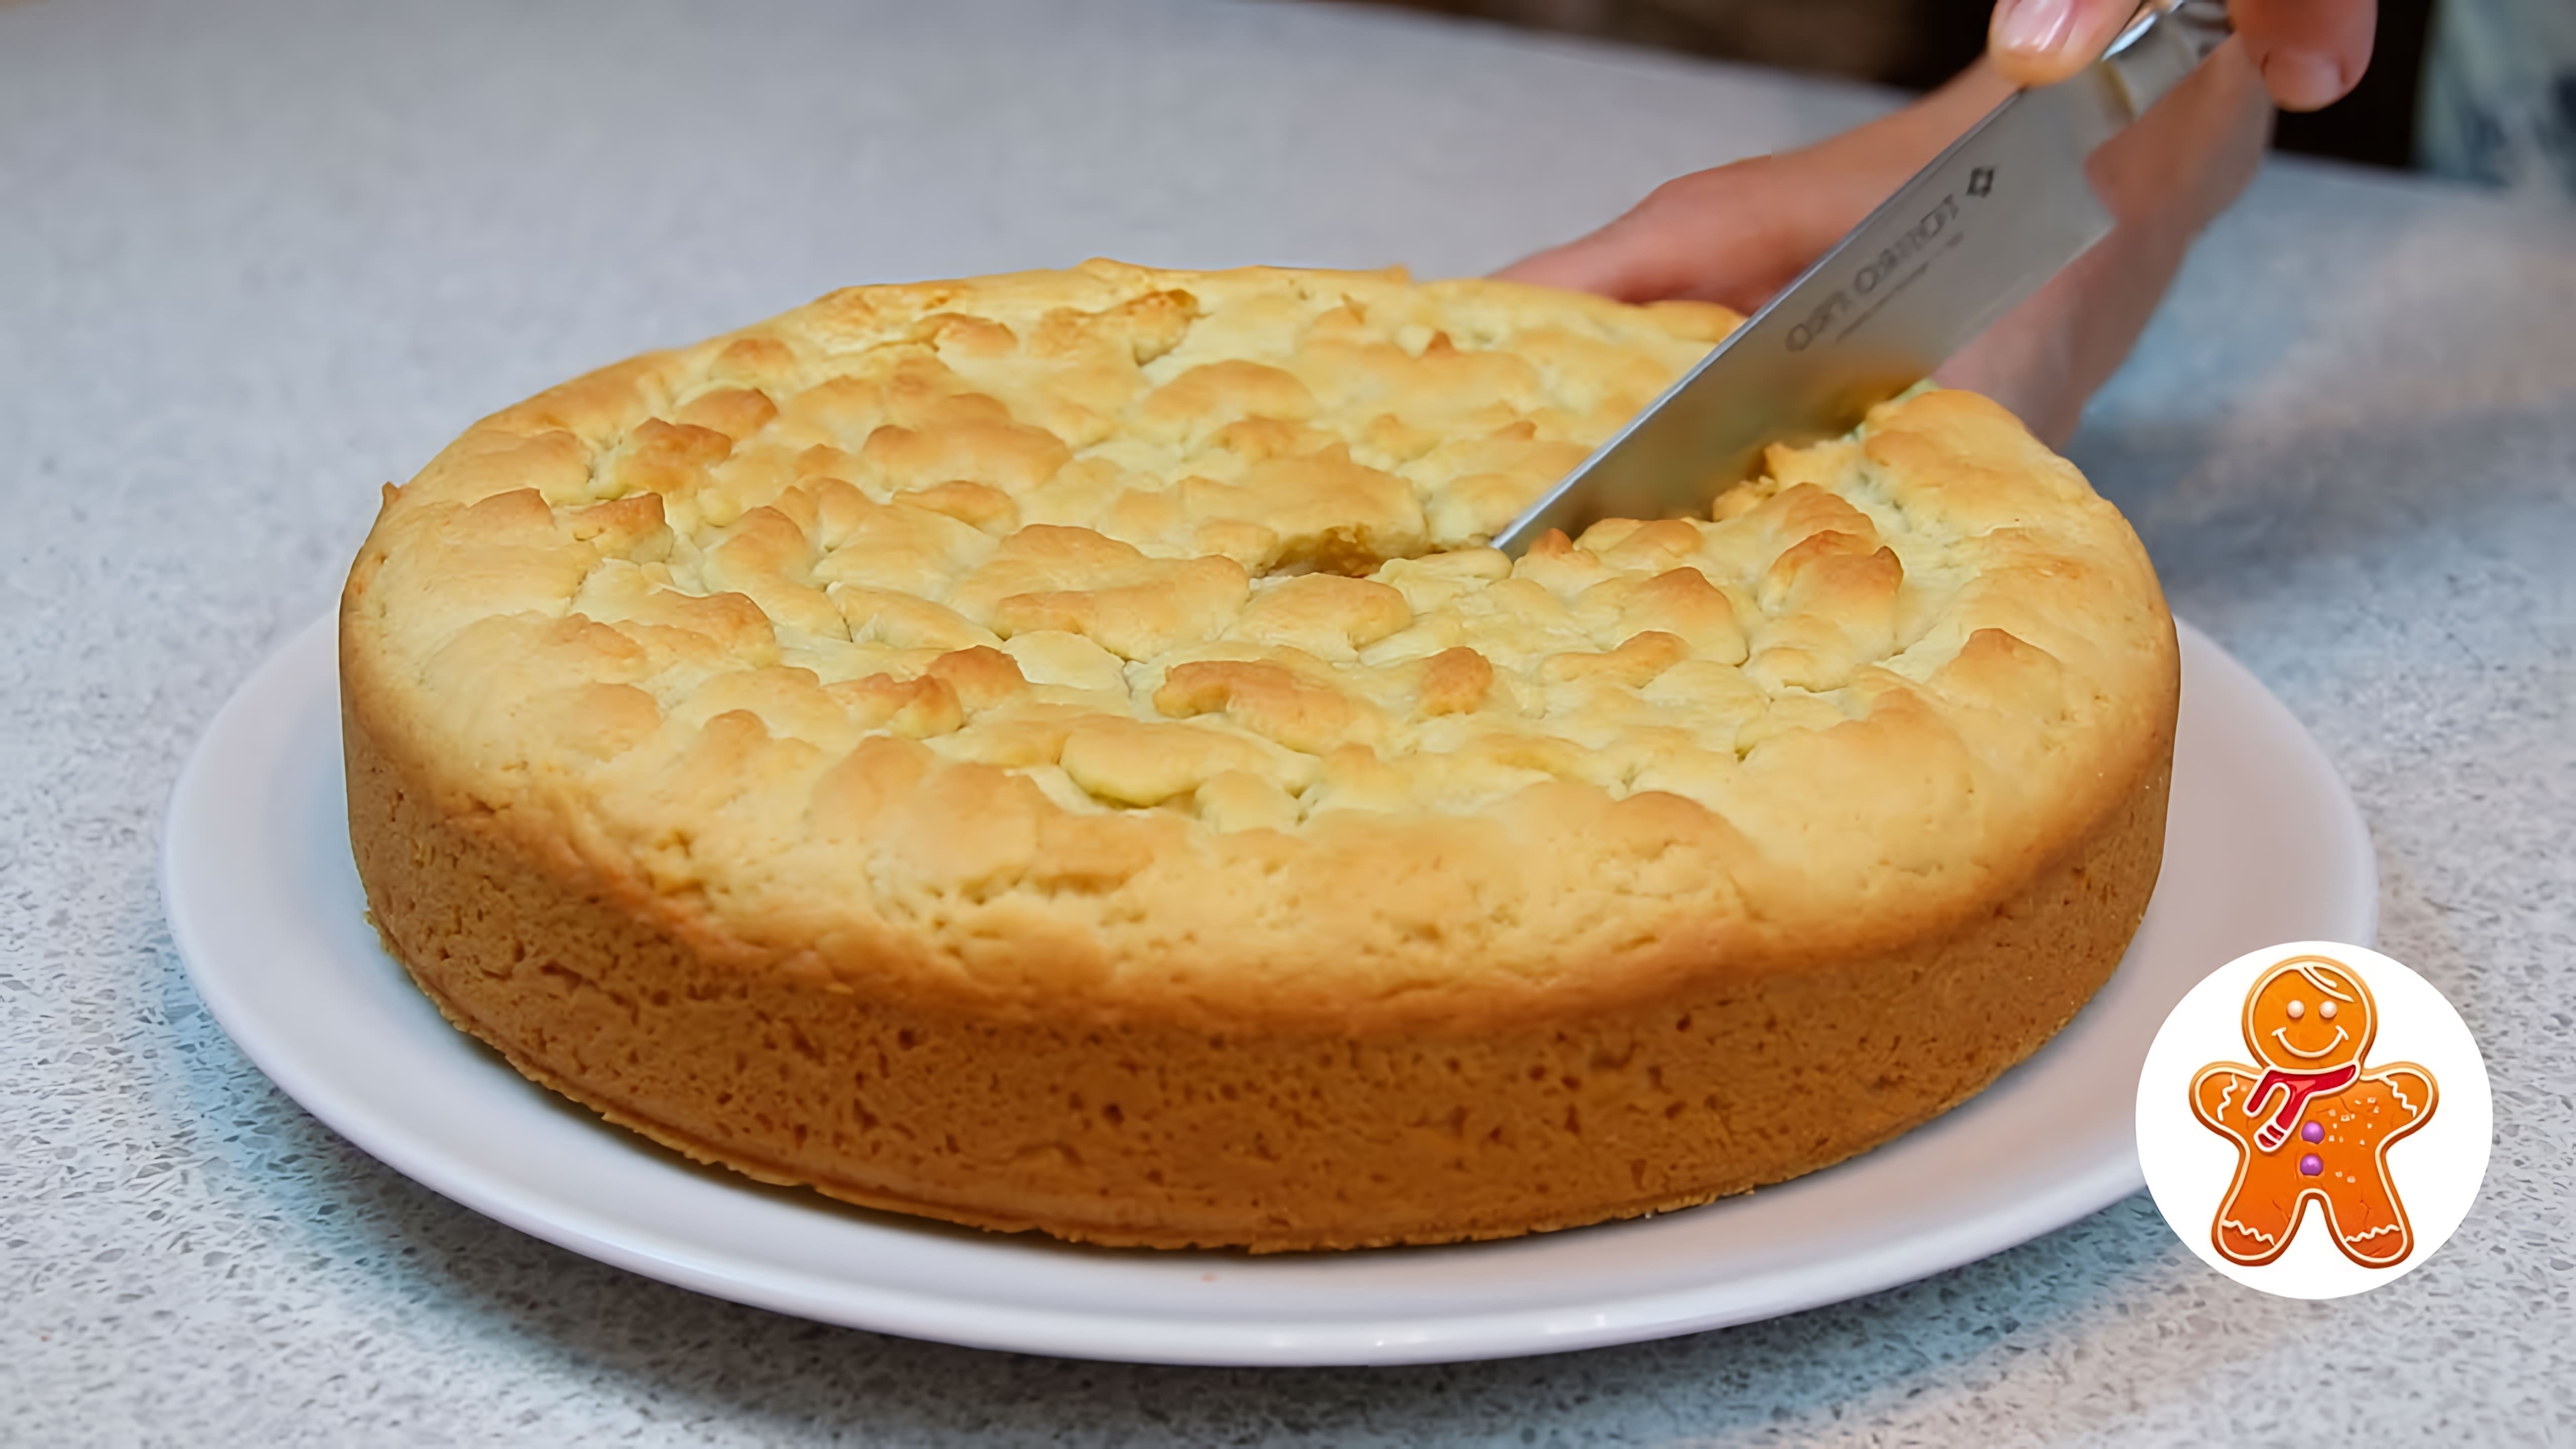 В этом видео демонстрируется процесс приготовления домашнего пирога с красной смородиной